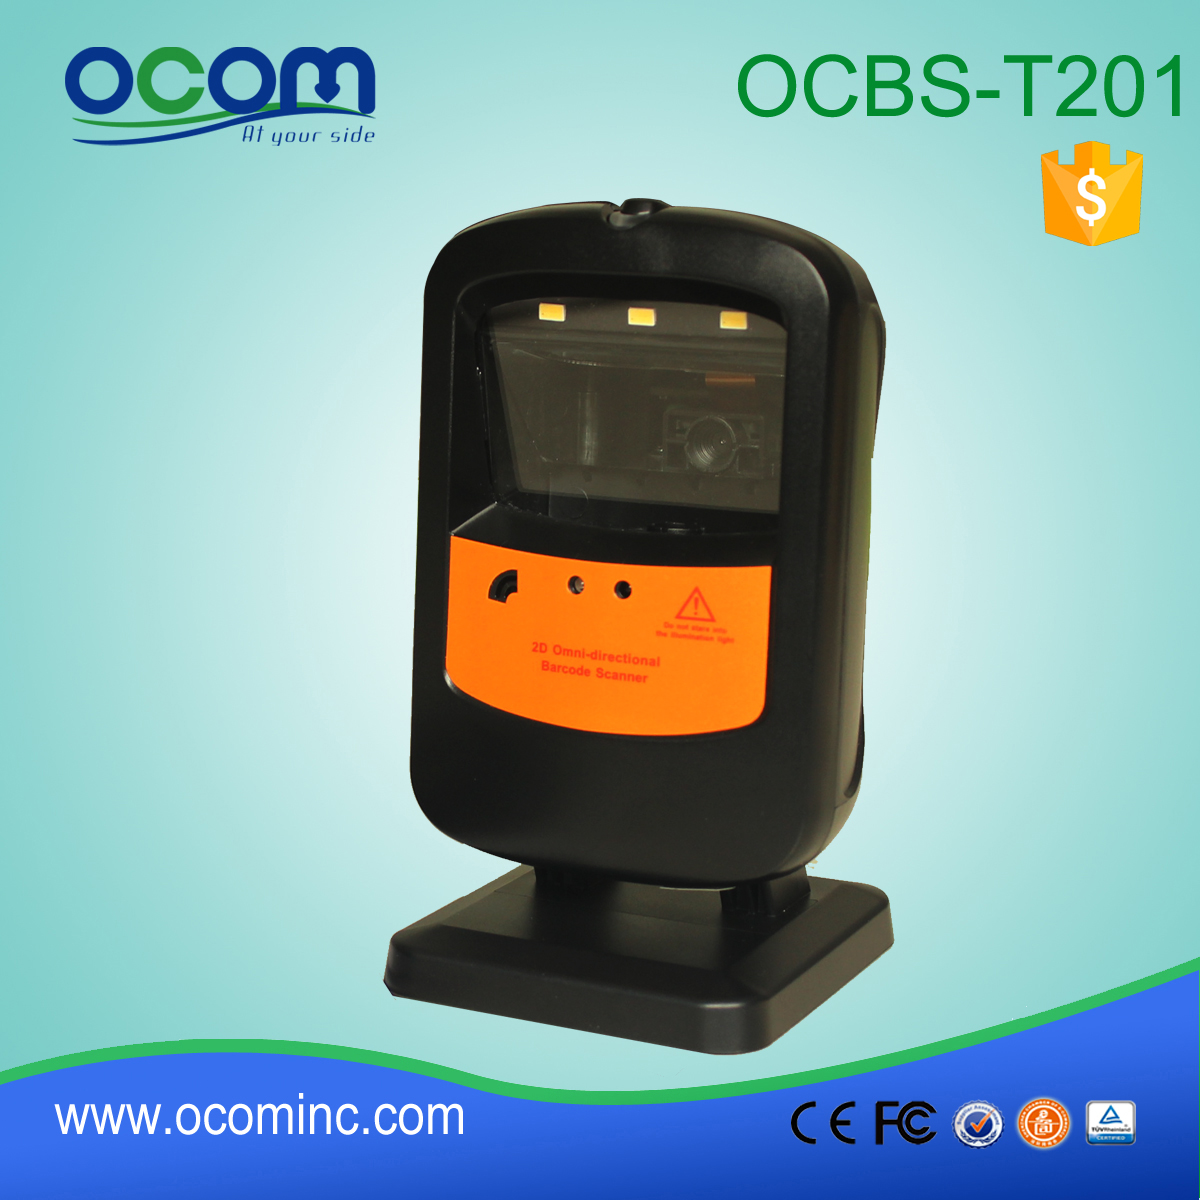 OCB-T201: omnidirezionale macchina barcode scanner, parti dello scanner di codici a barre